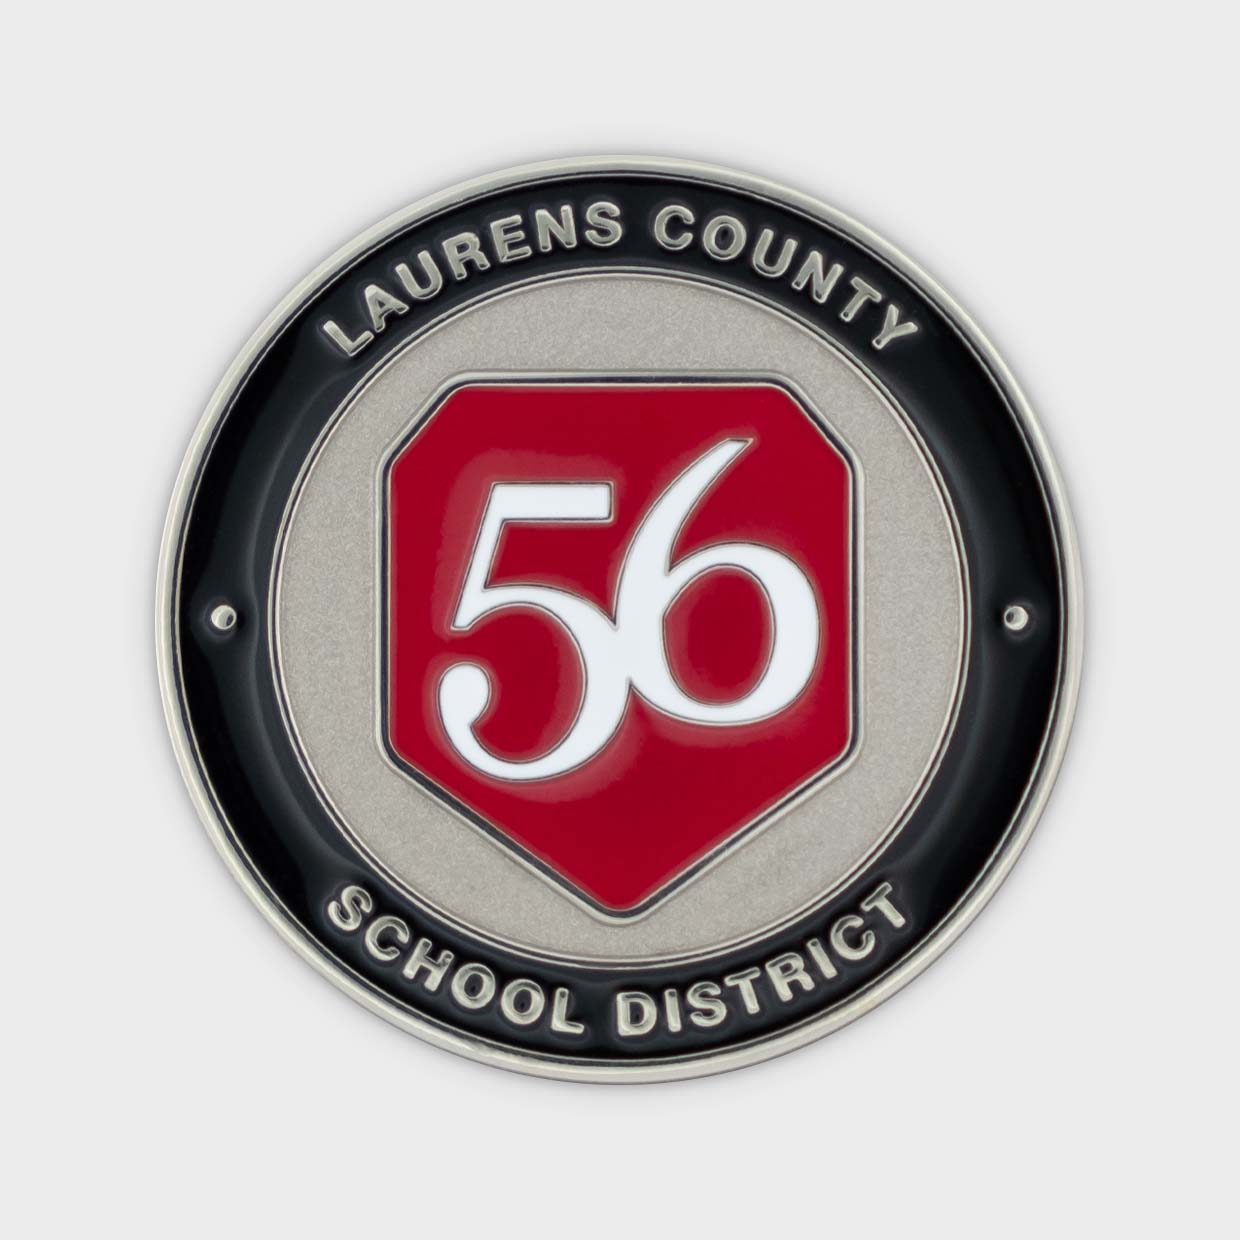 Laurens County School District Obverse